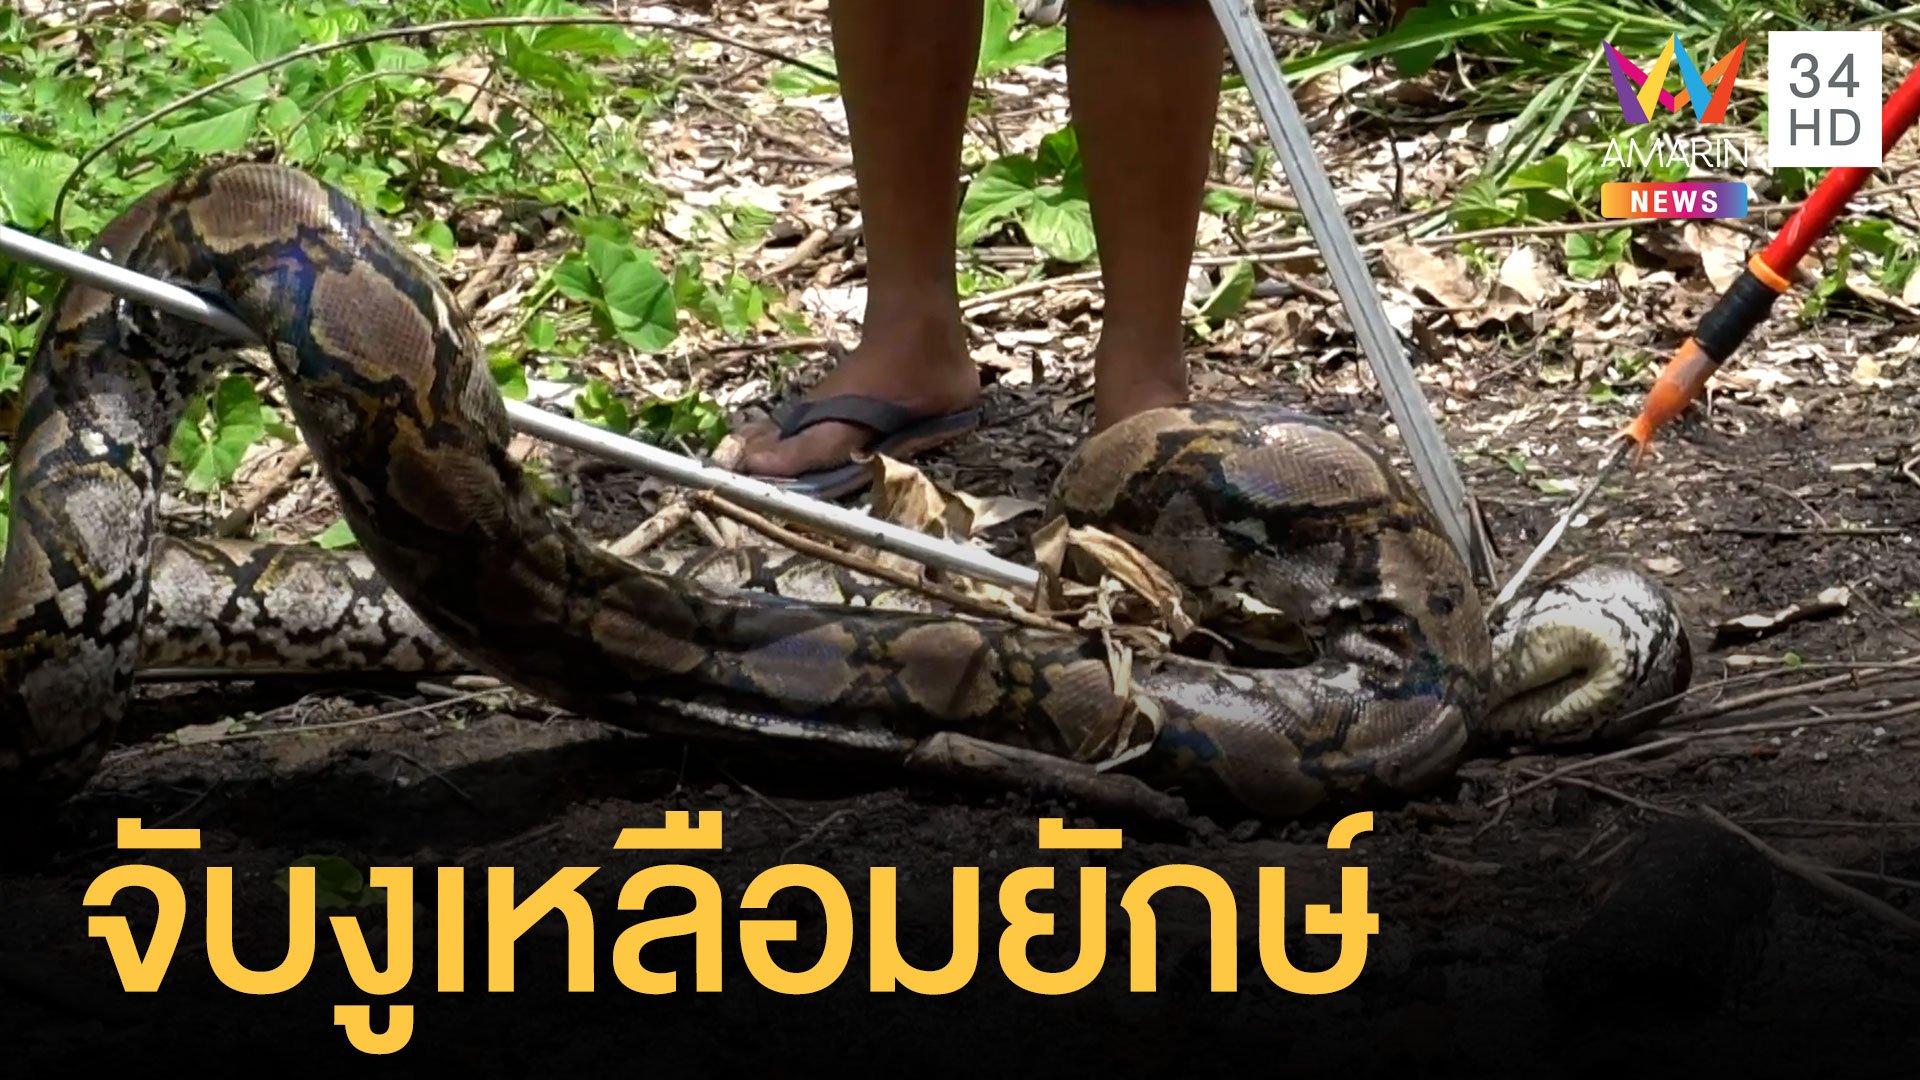 งูเหลือมยักษ์ยาว 5 เมตร เตรียมลอกคราบ | ข่าวอรุณอมรินทร์ | 5 ก.ย. 64 | AMARIN TVHD34